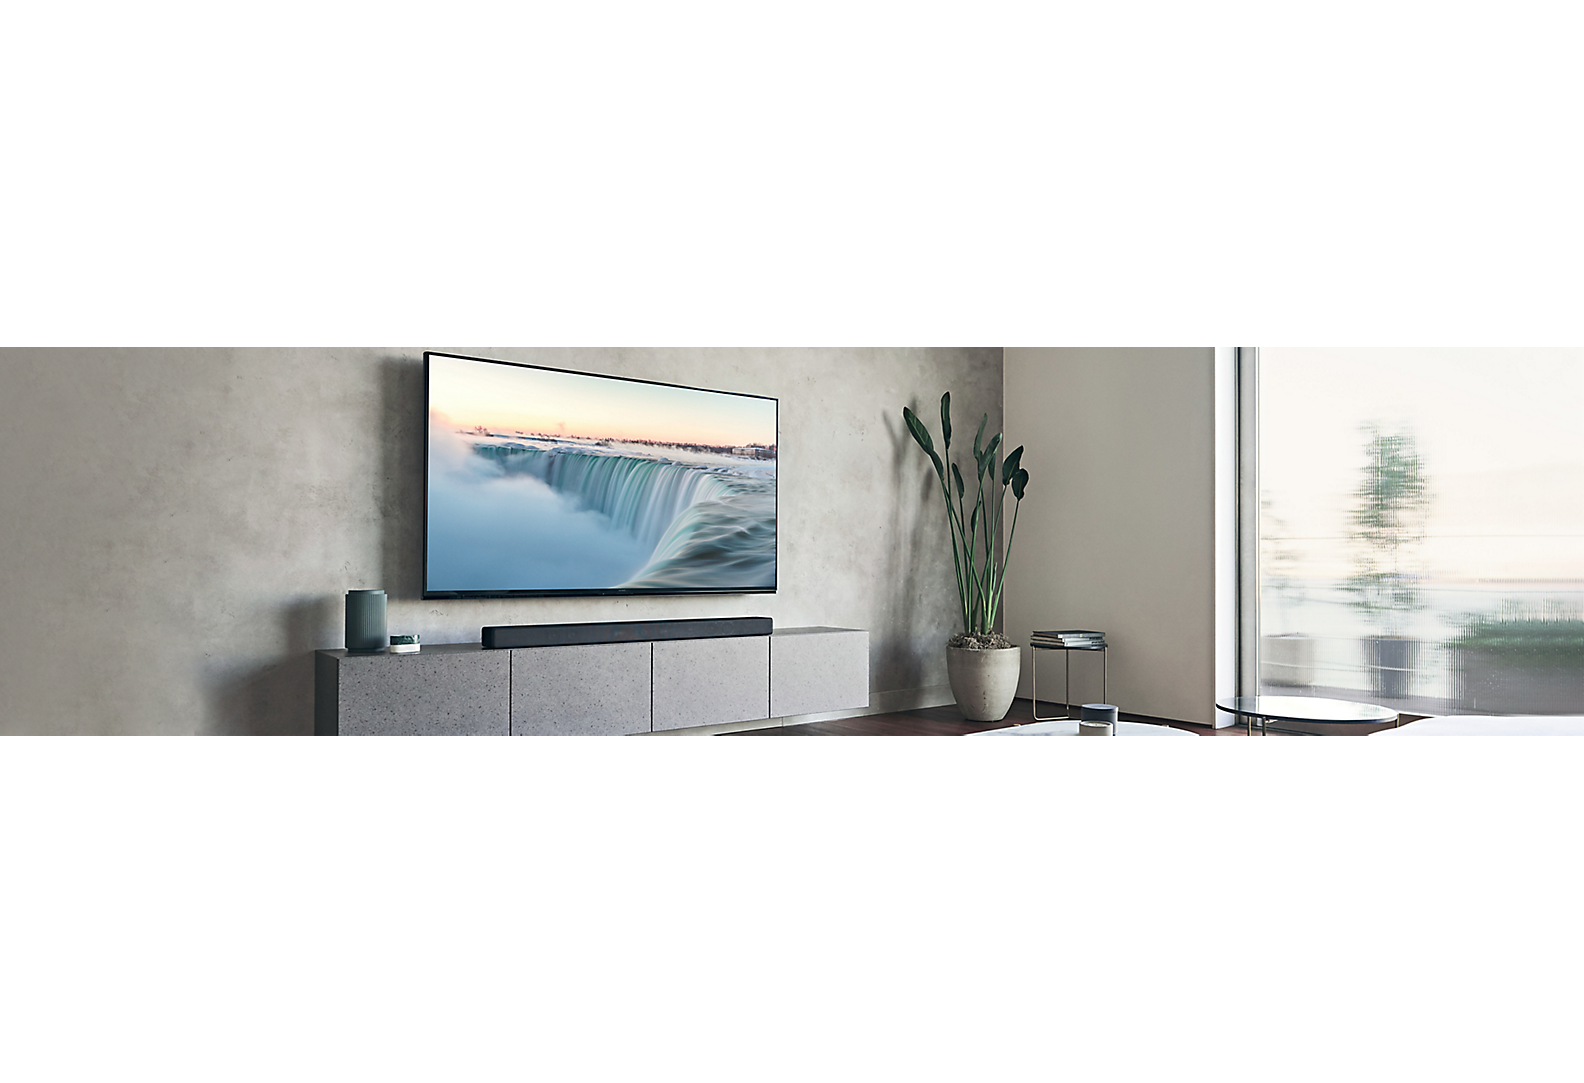 Telewizor zainstalowany na szarej ścianie w utrzymanym w szarej tonacji domowym salonie z różnymi elementami dekoracyjnymi.